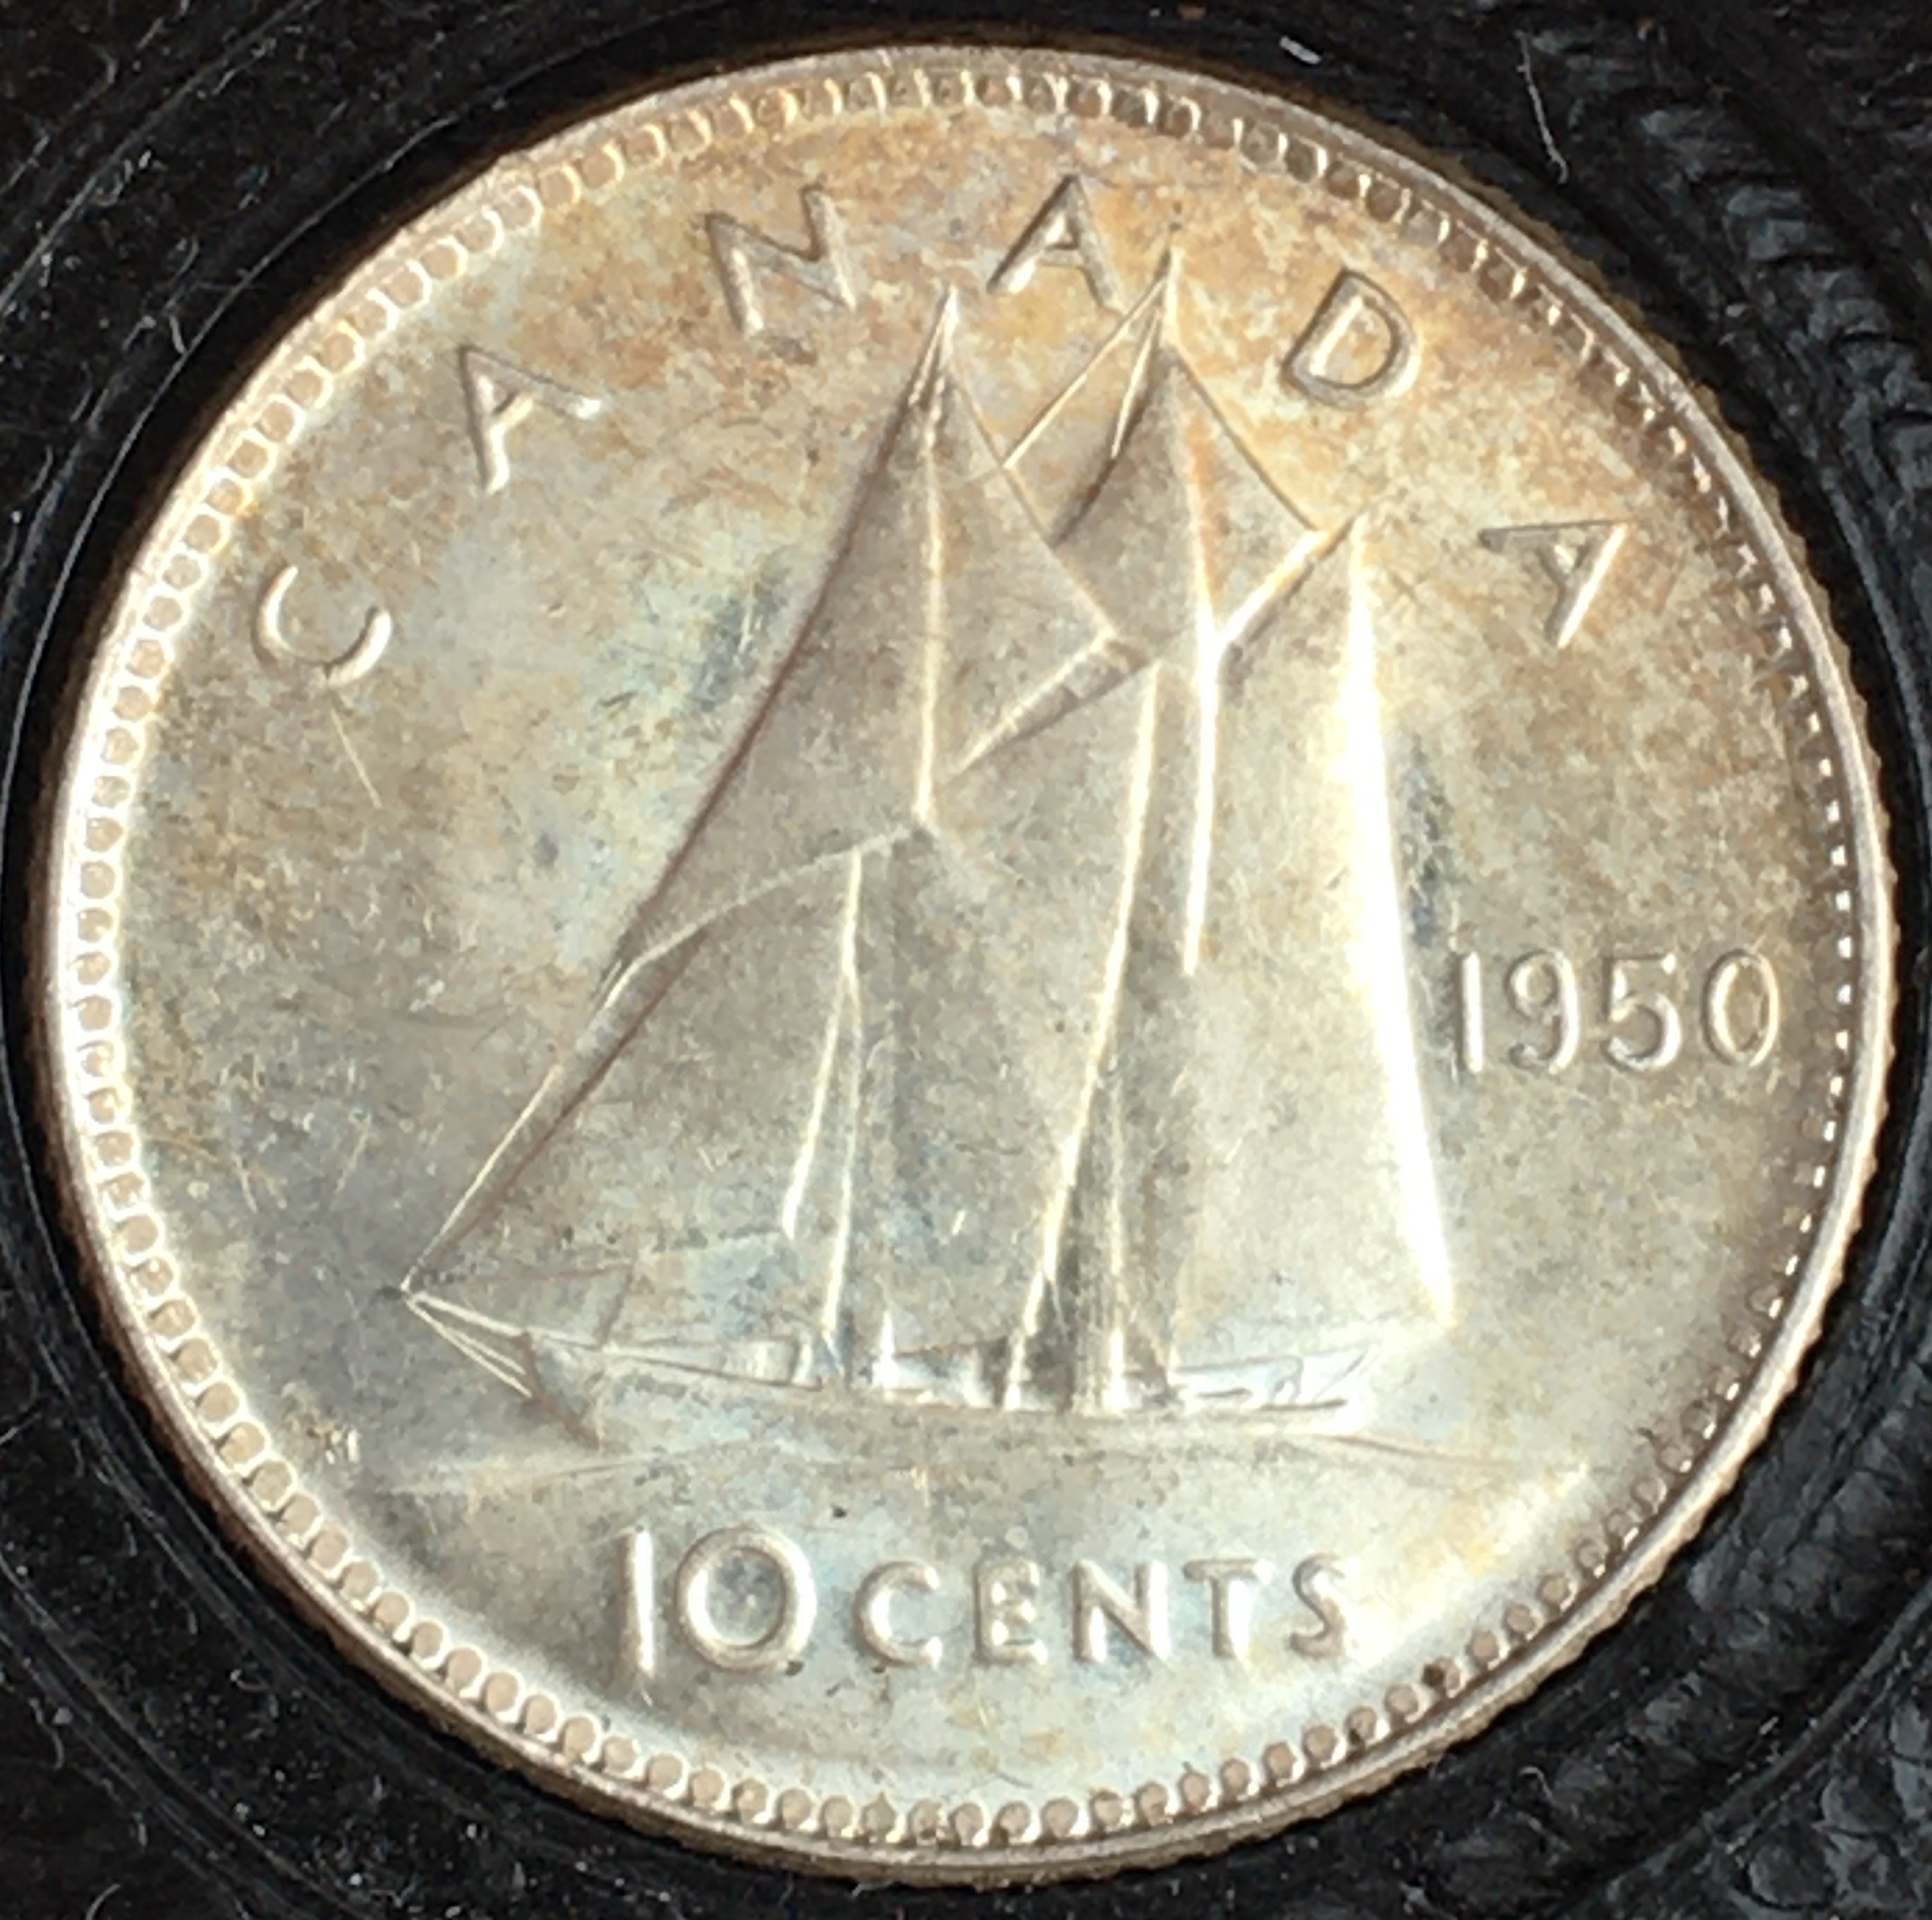 10 cents 1950 revers.JPG